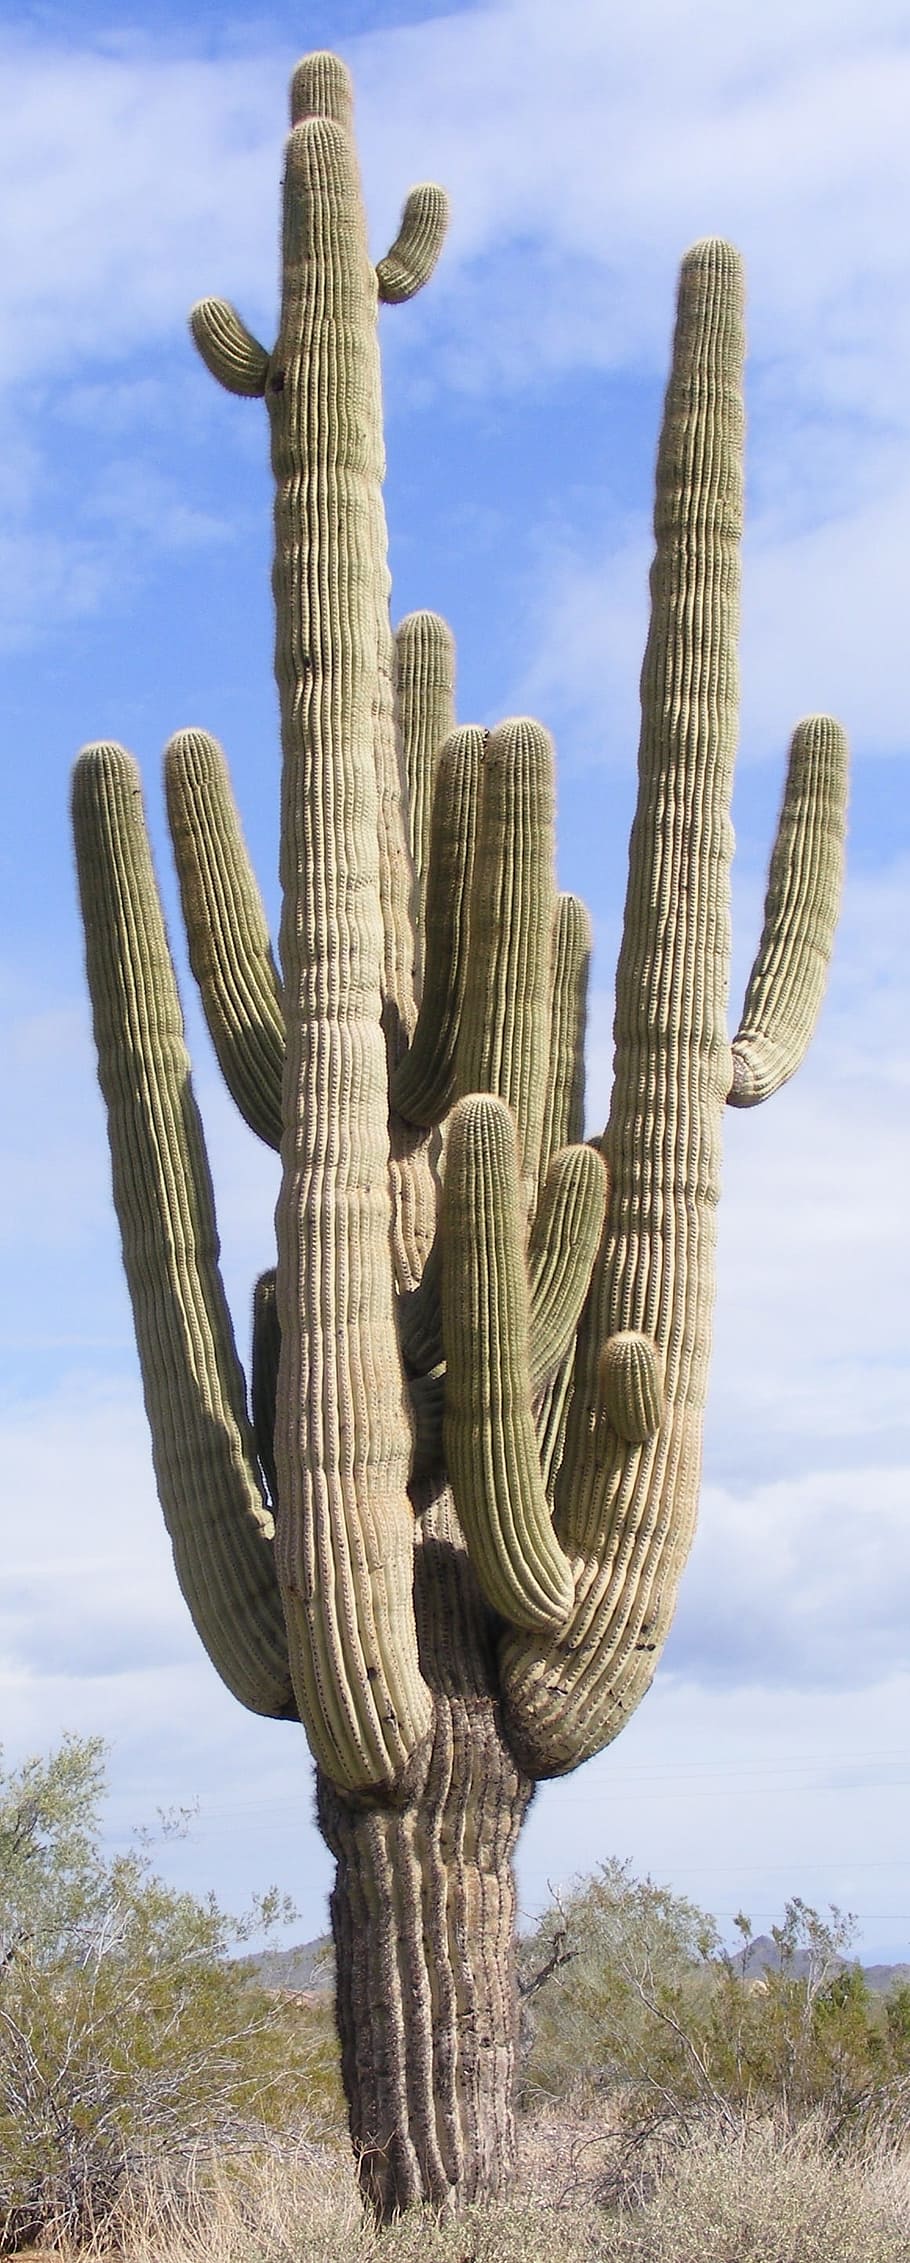 cactus, multiple arms, saguaro, arizona, sonoran, desert, southwest, nature, saguaro cactus, succulent plant